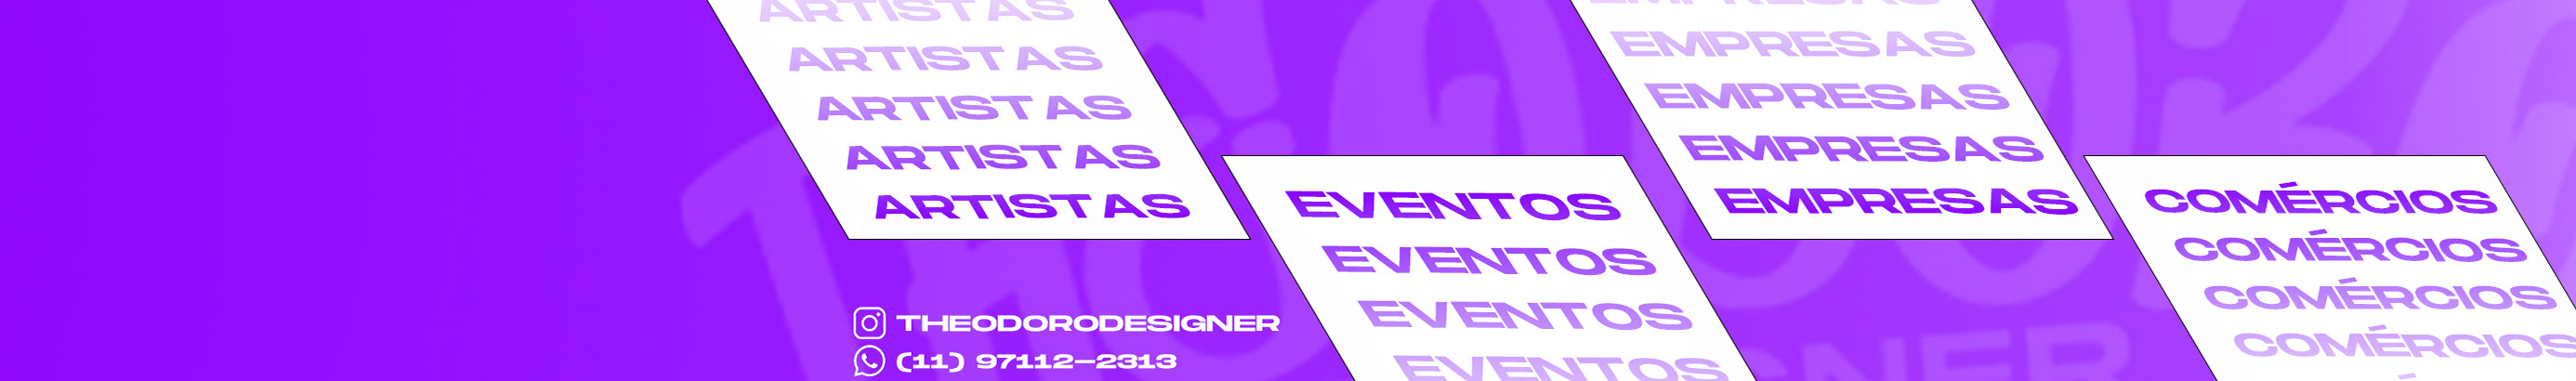 Theodoro Designer's profile banner